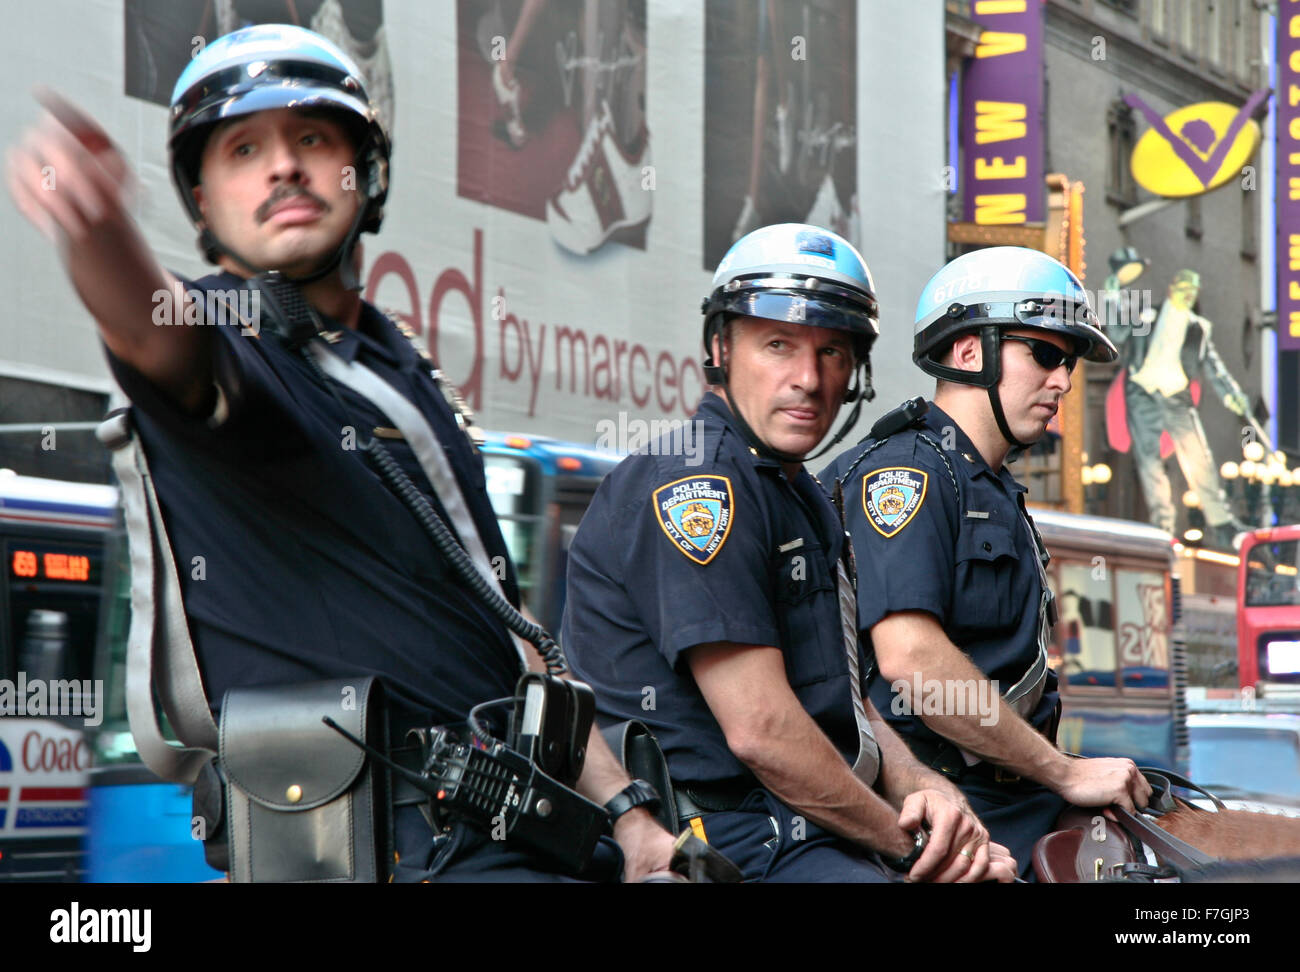 La CIUDAD DE NUEVA YORK - 26 DE JUNIO: policías montar sus caballos en el centro de Nueva York, en la calle principal, Manhattan el 26 de junio de 2008, Foto de stock